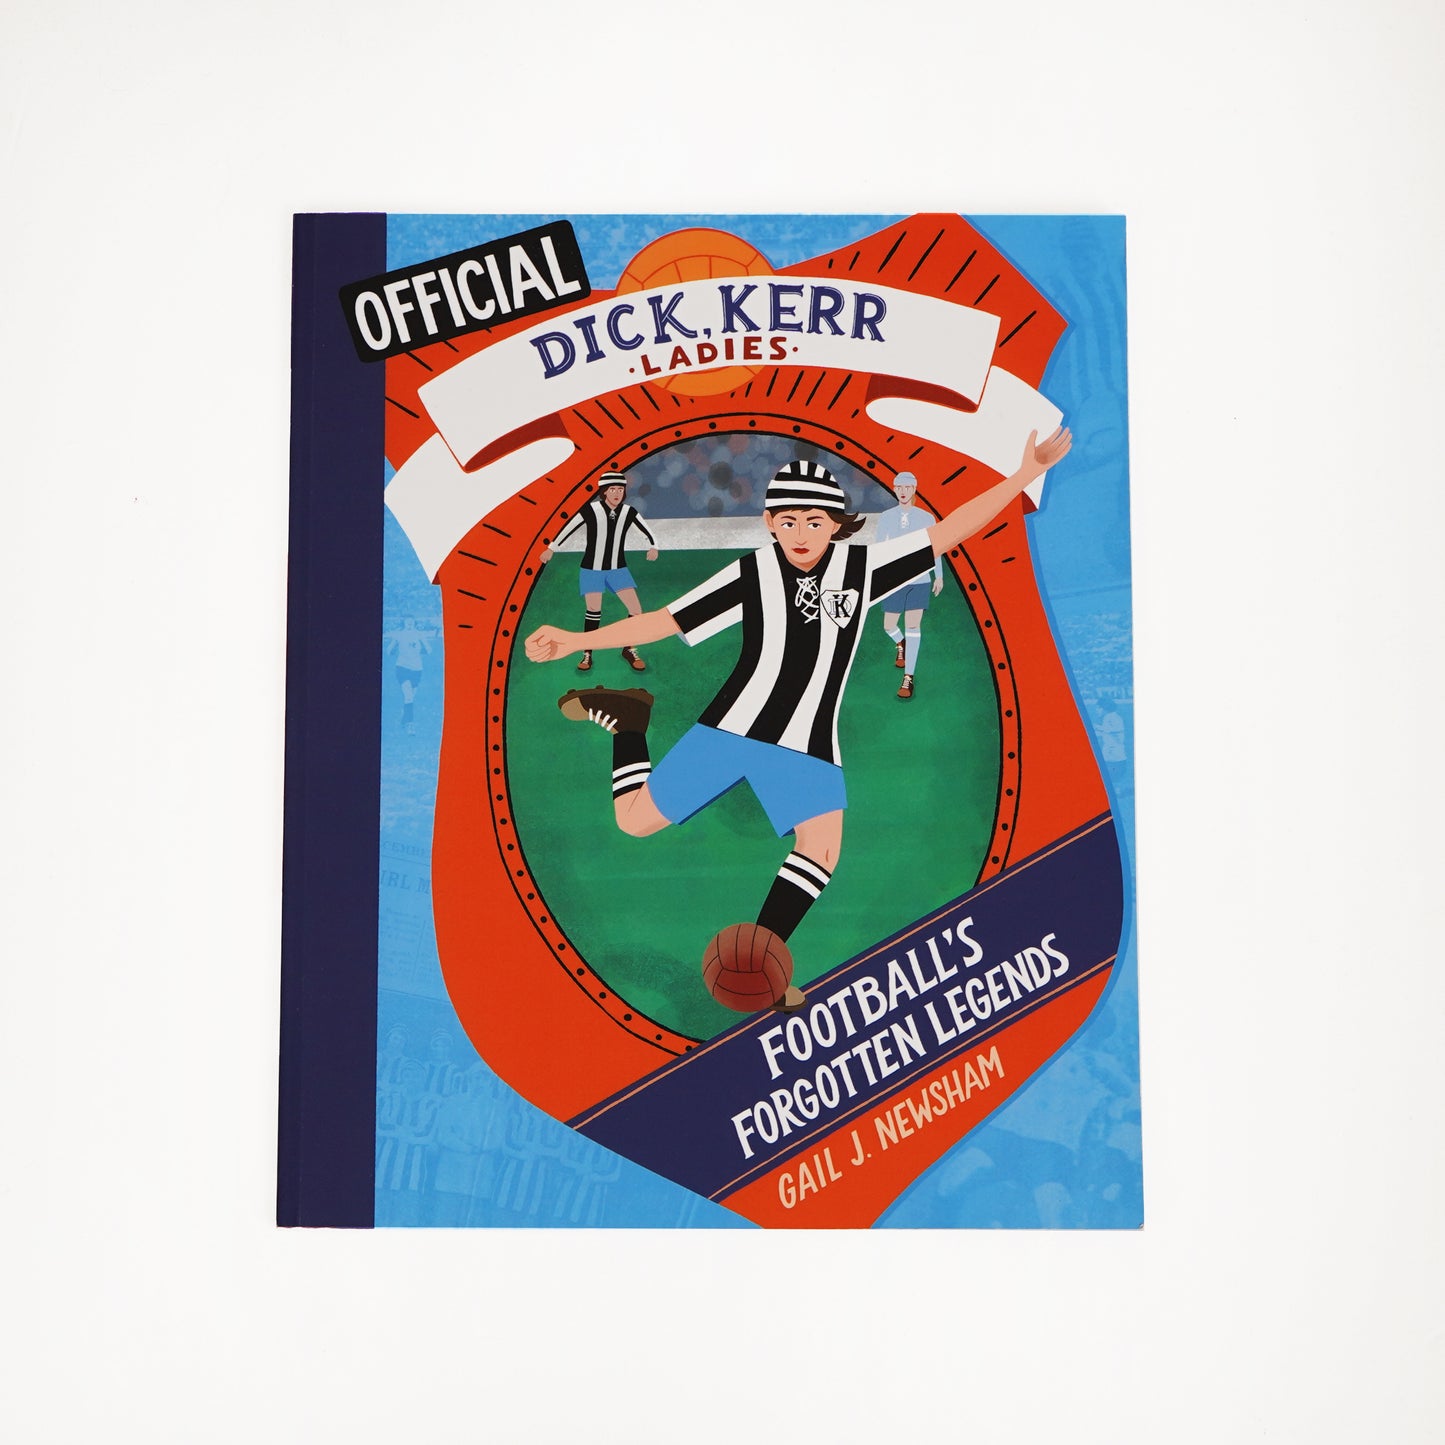 Dick Kerr Girls: Footballs Forgotten Legends